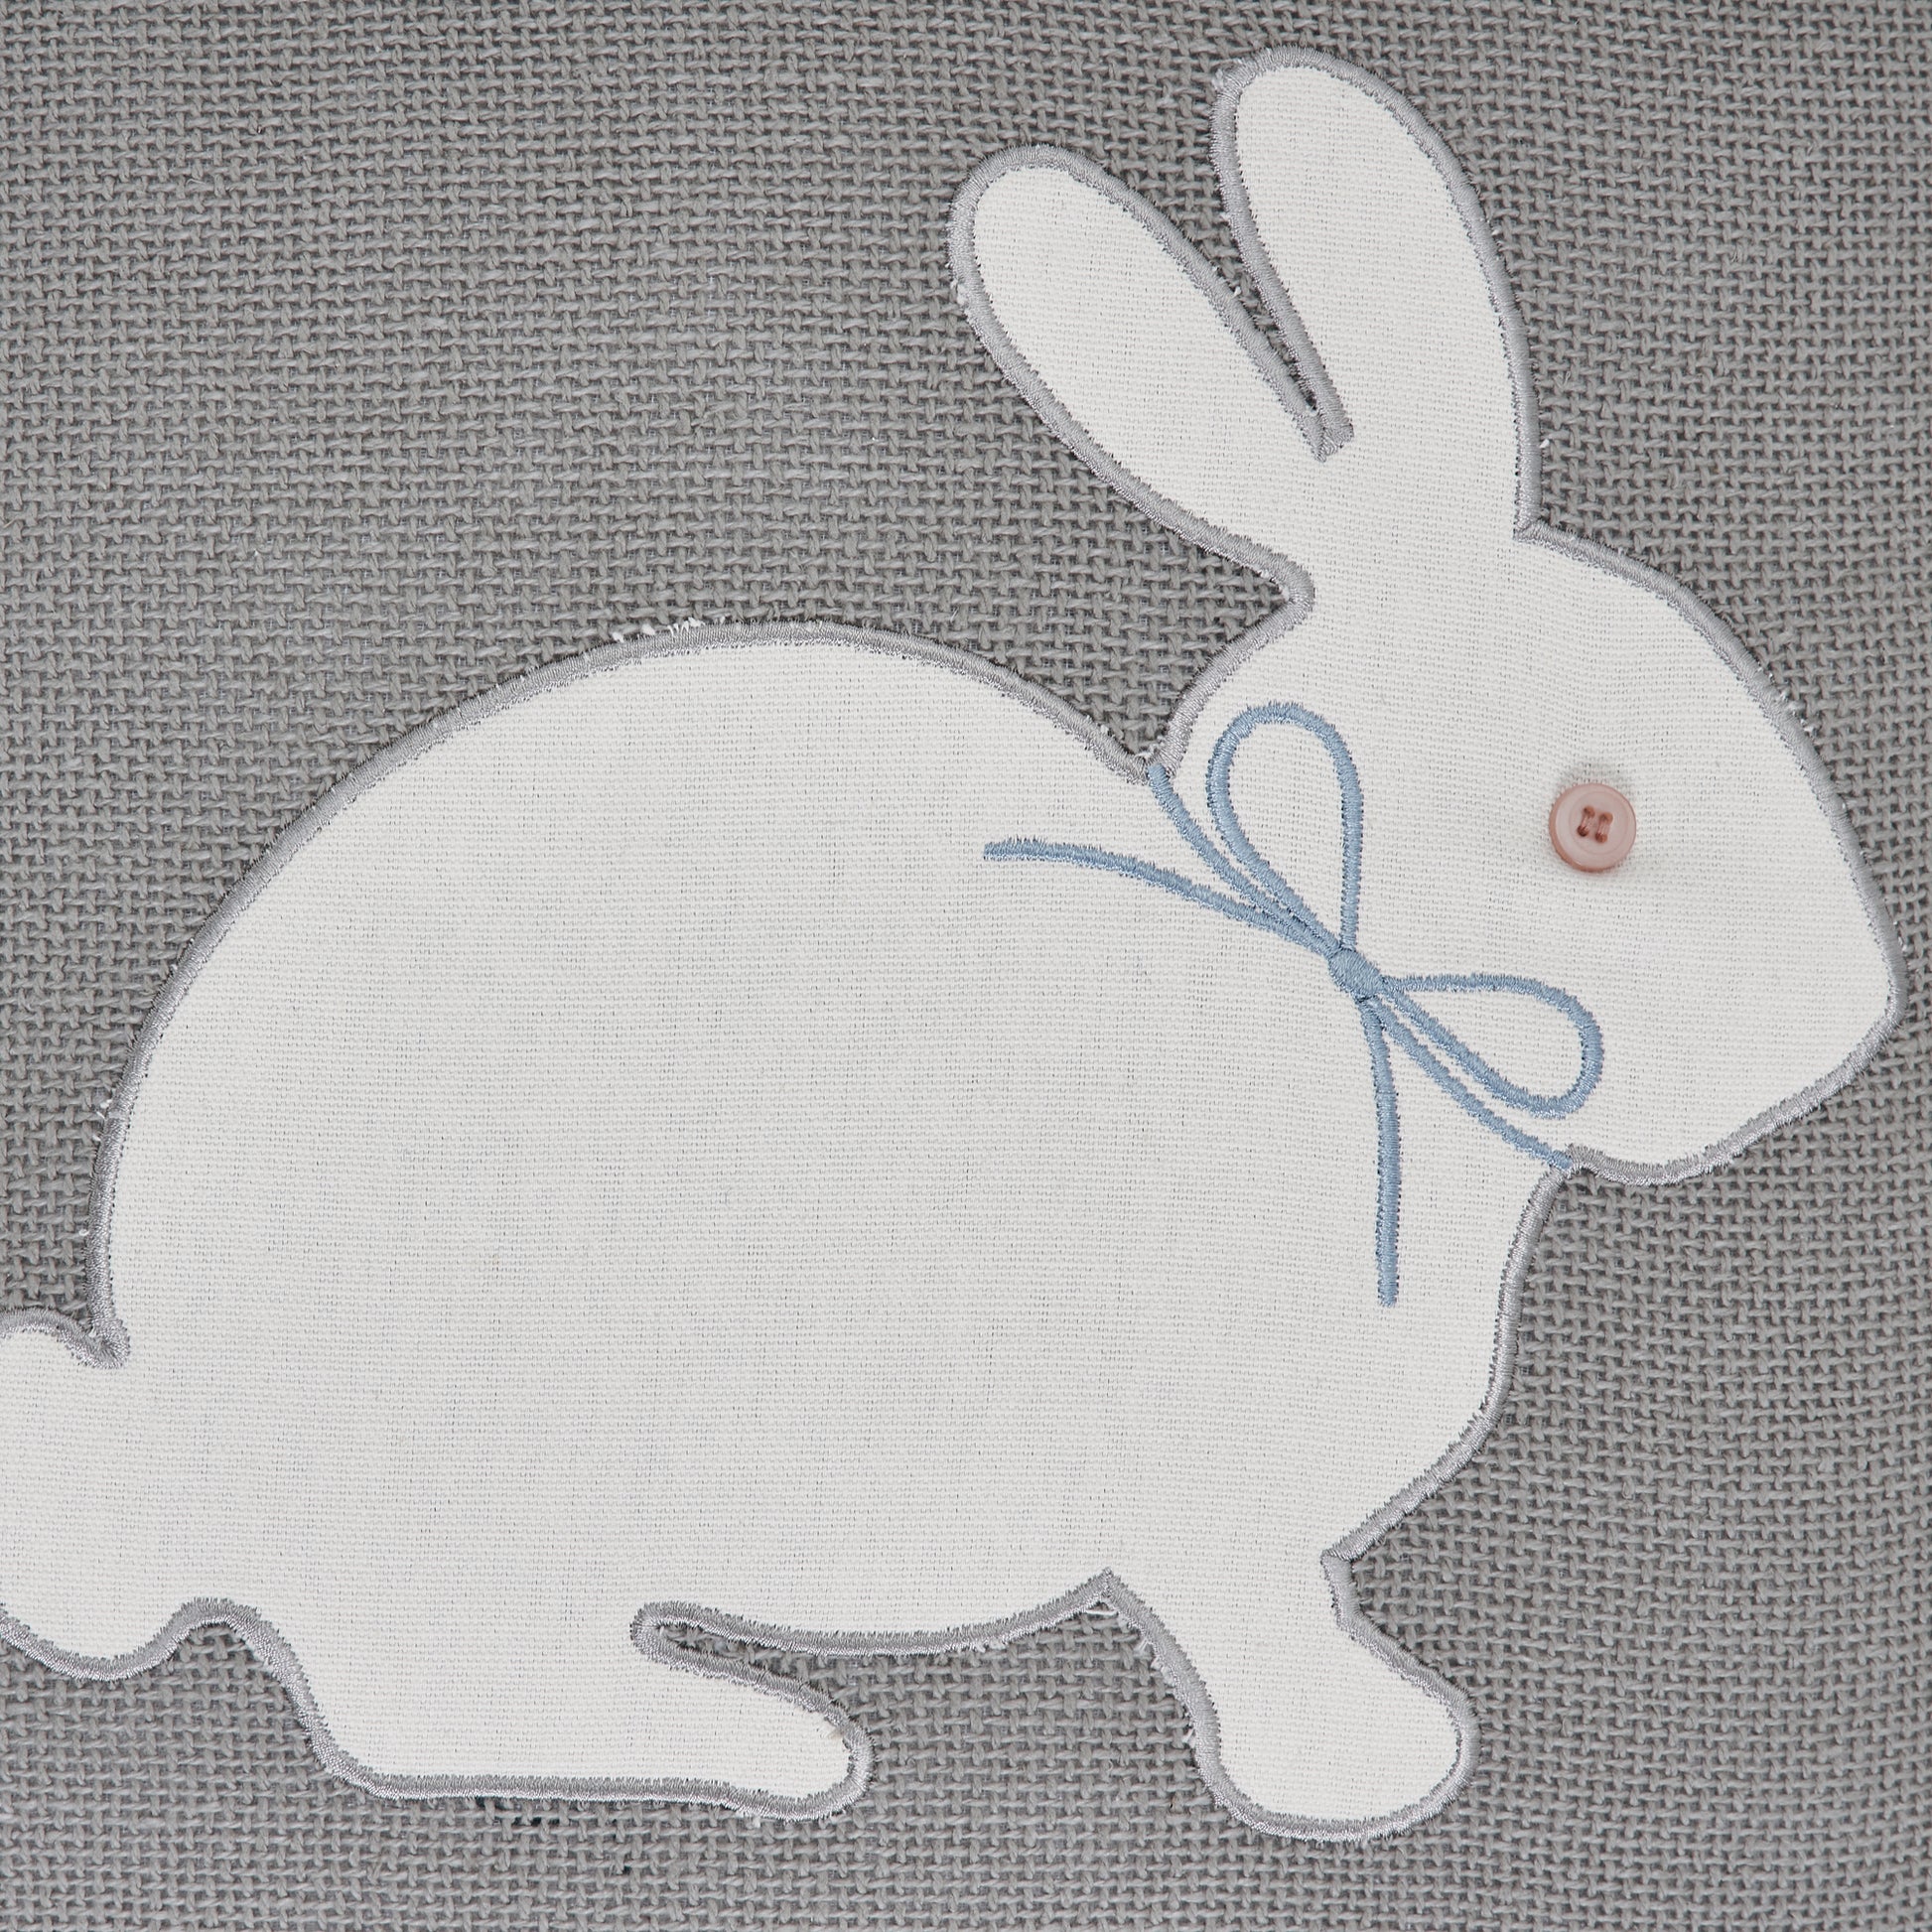 81149-Burlap-Applique-Bunny-Pillow-18x18-image-3